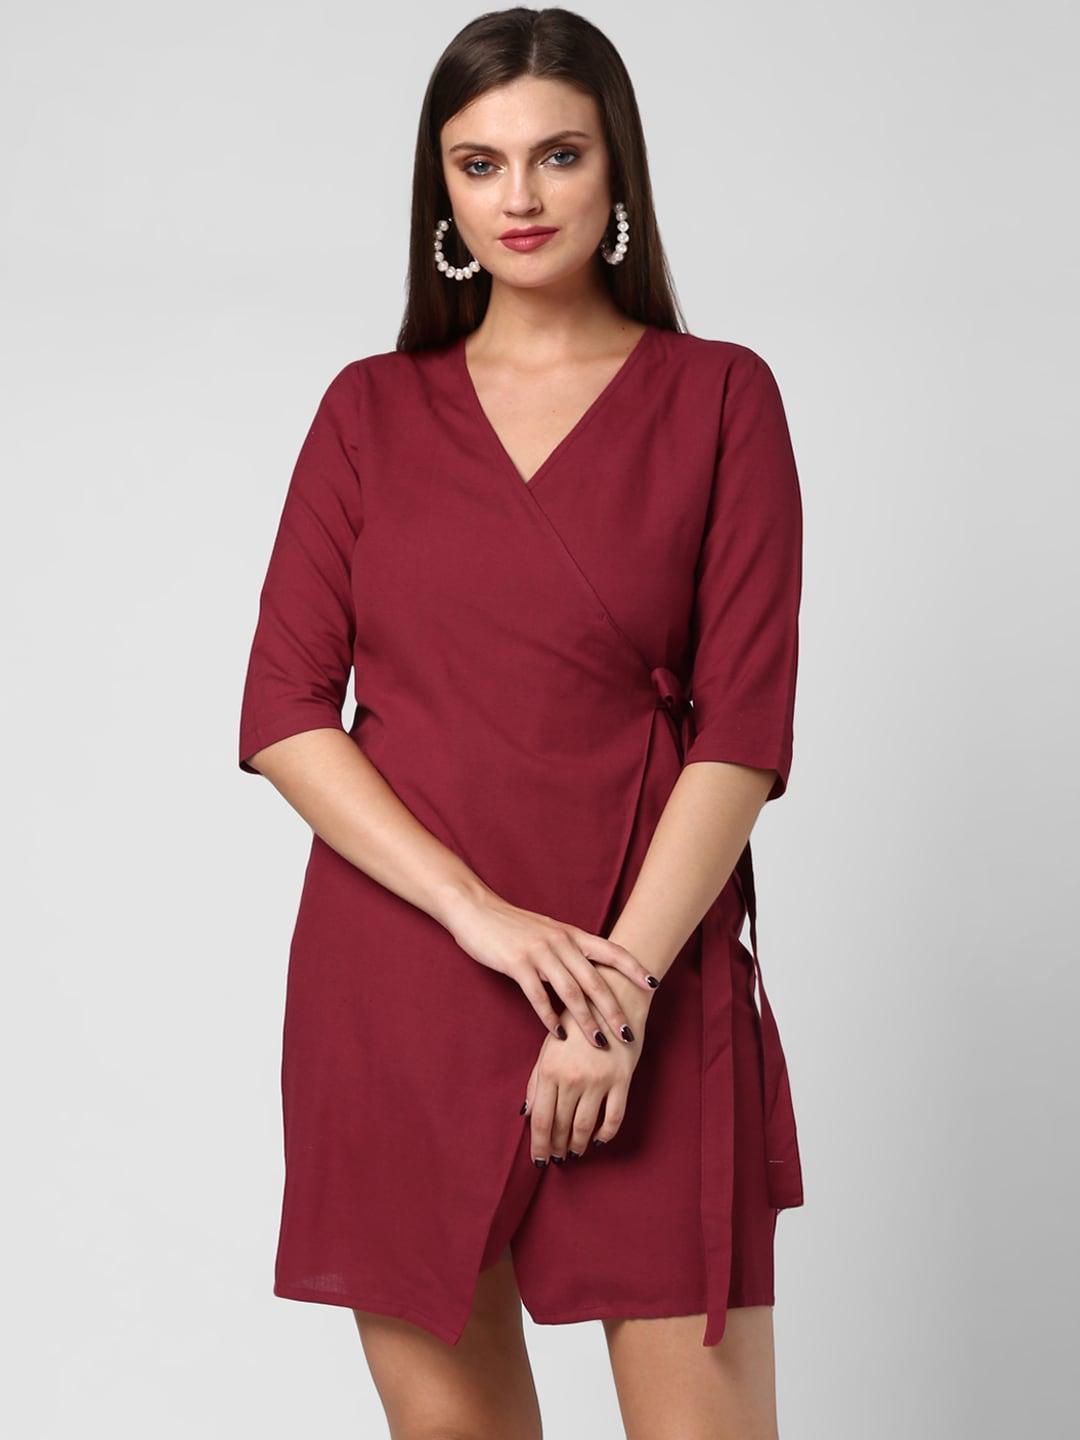 stylestone women maroon solid wrap dress